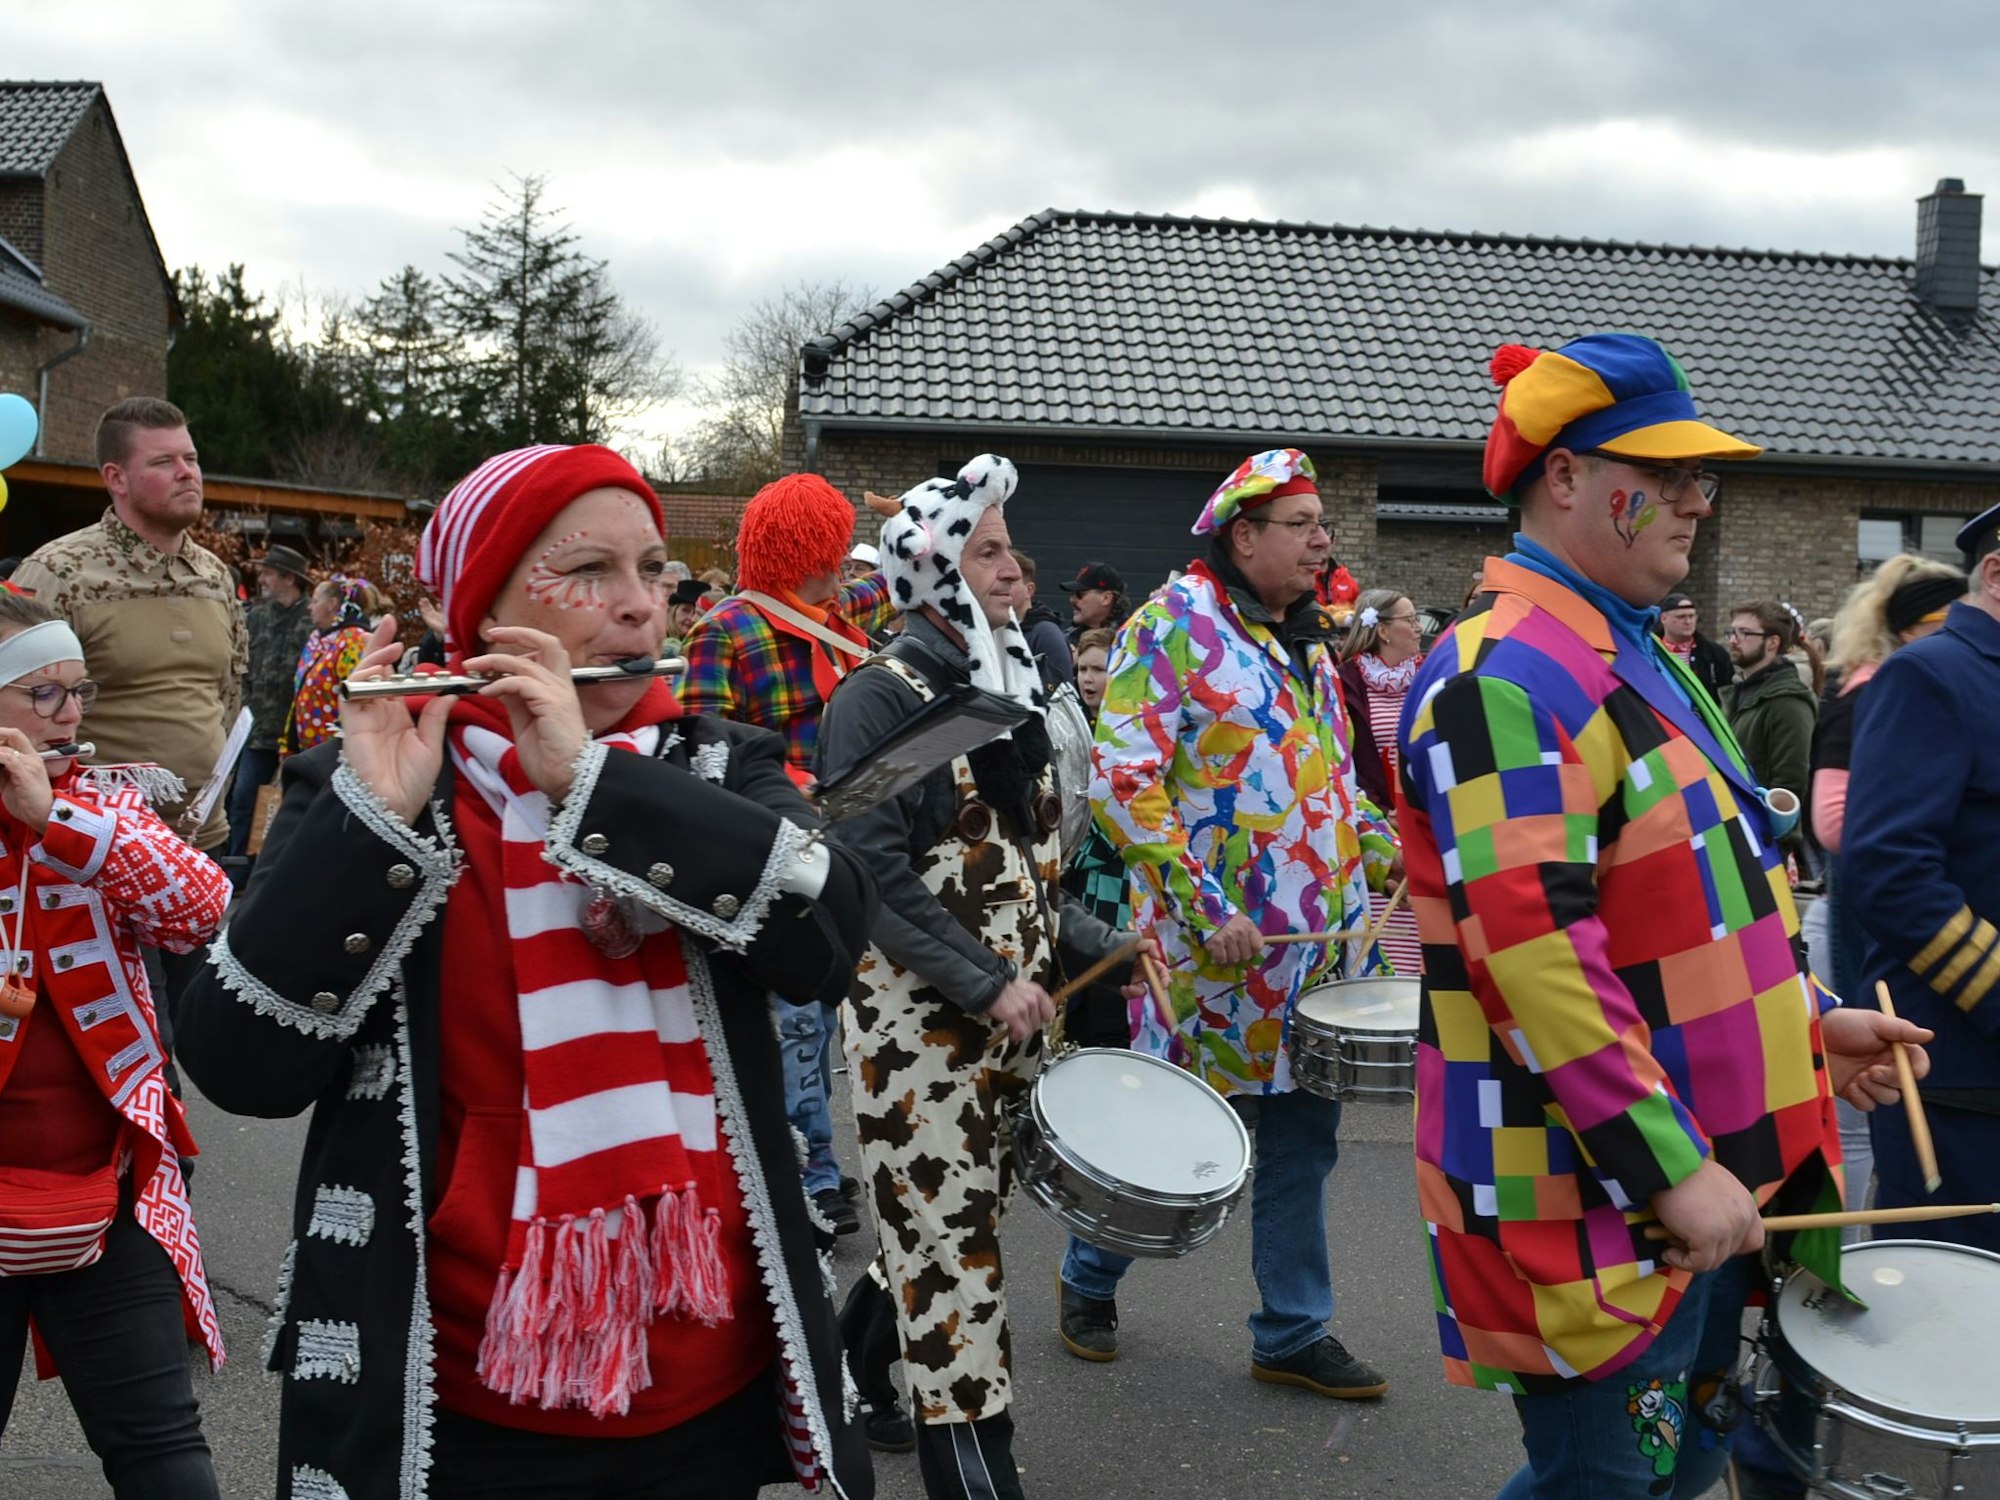 Bunt verkleidete Musiker spielen im Schwerfener Karnevalszug auf ihren Instrumenten.